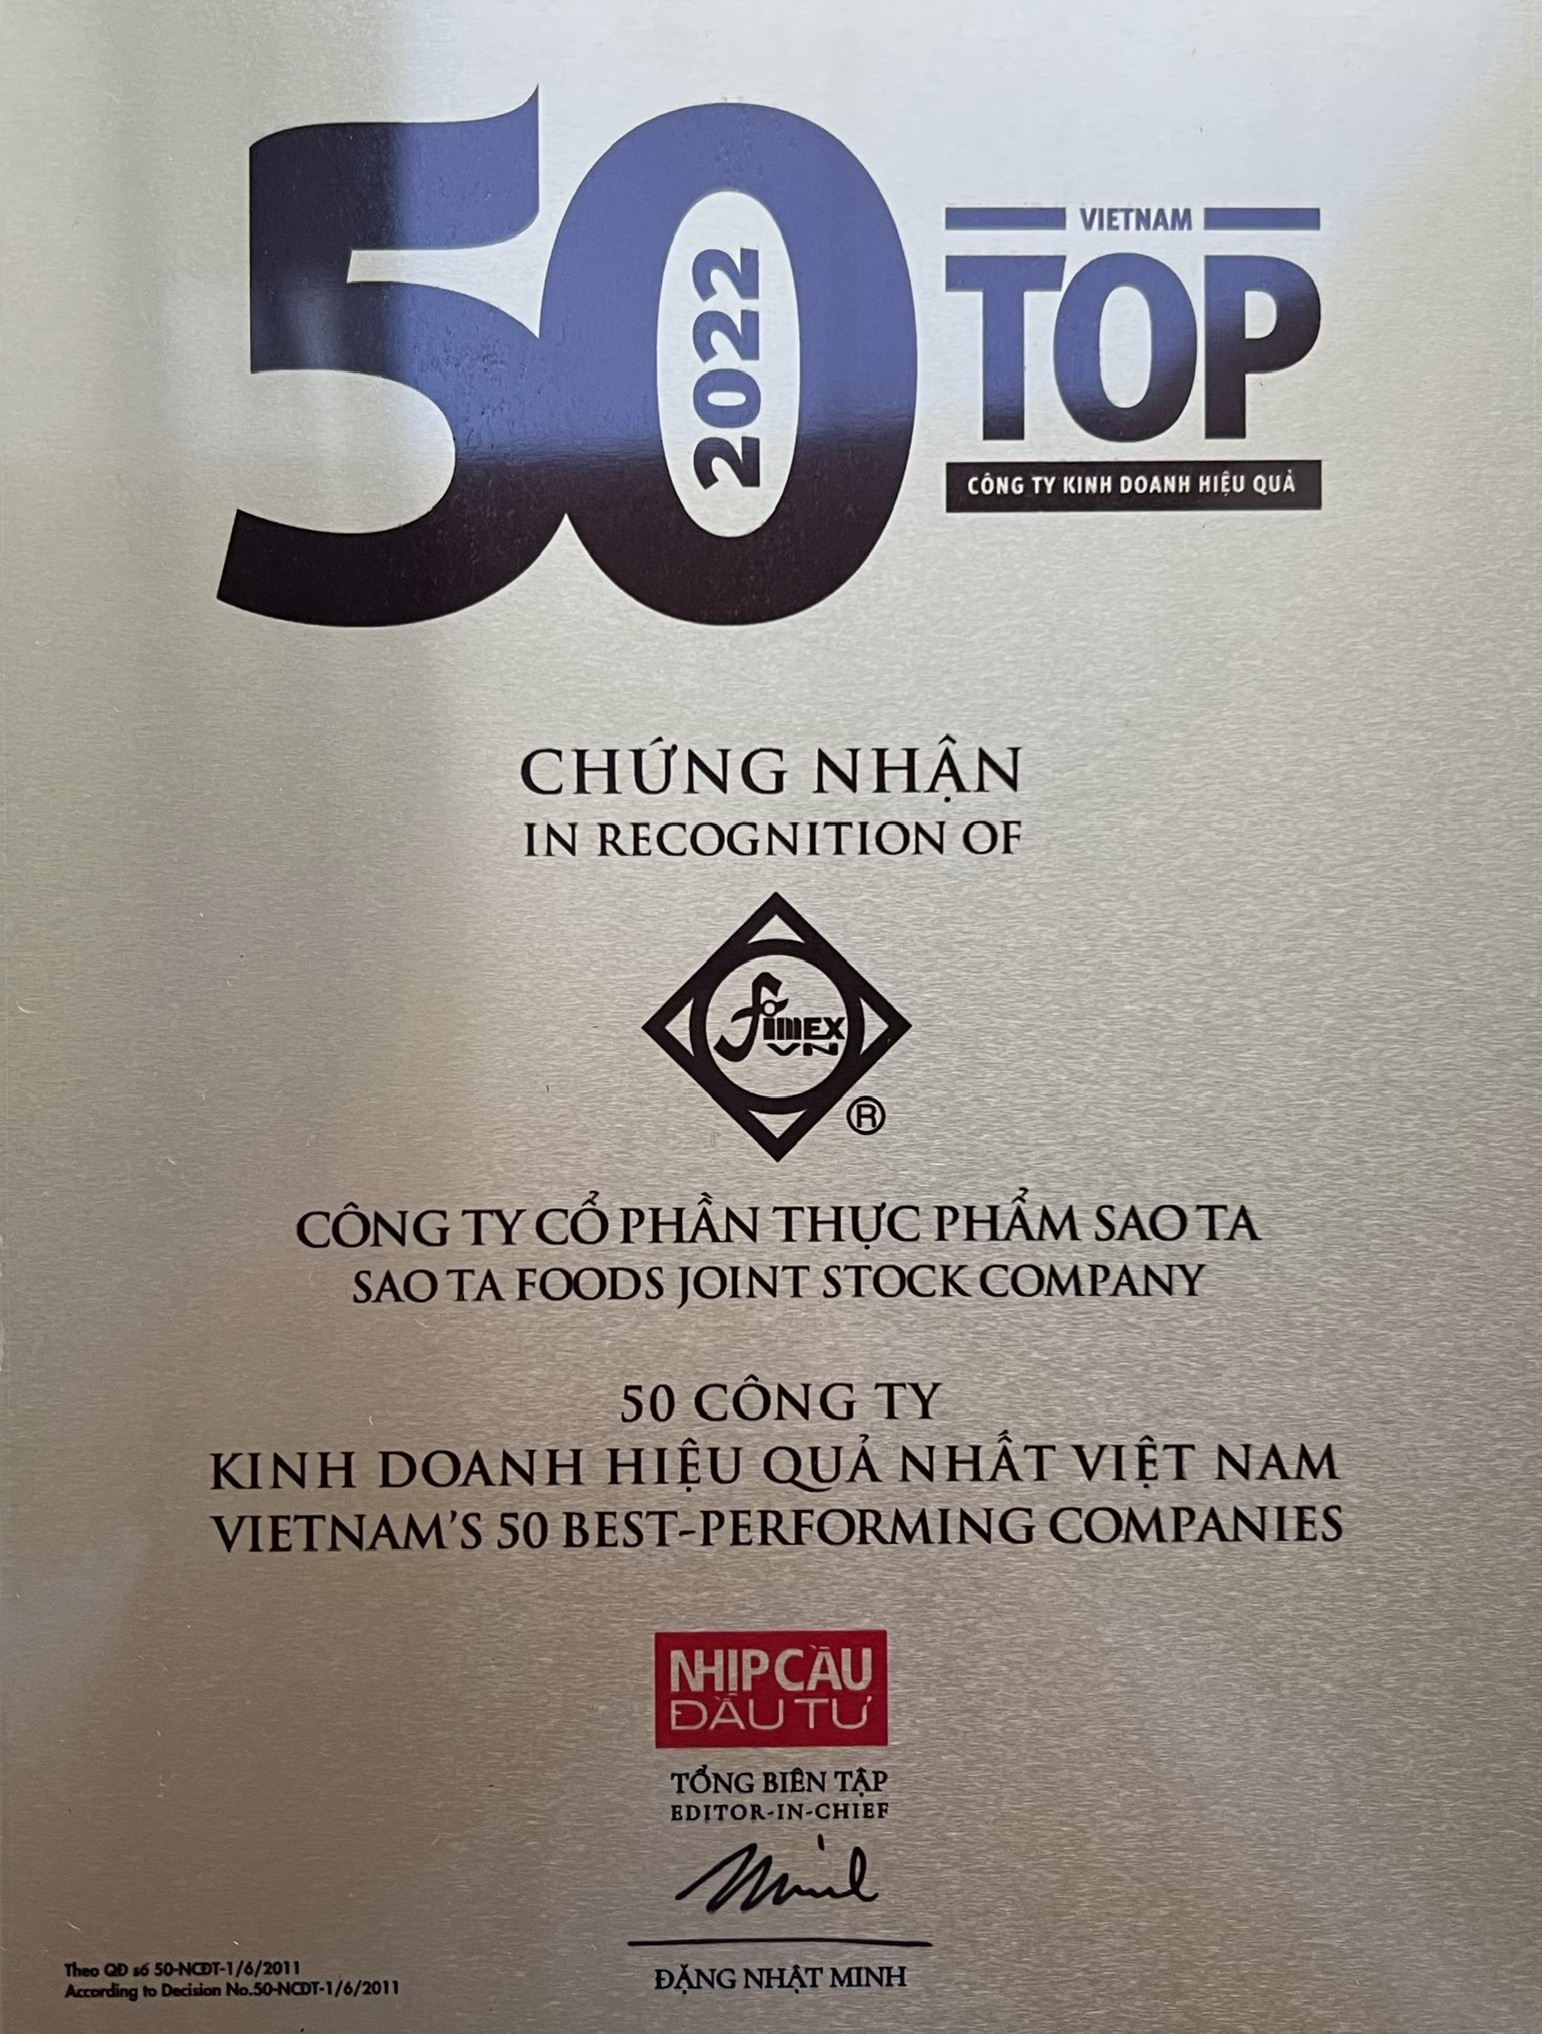 Chung nhan Top 50 cty kd hieu qua 